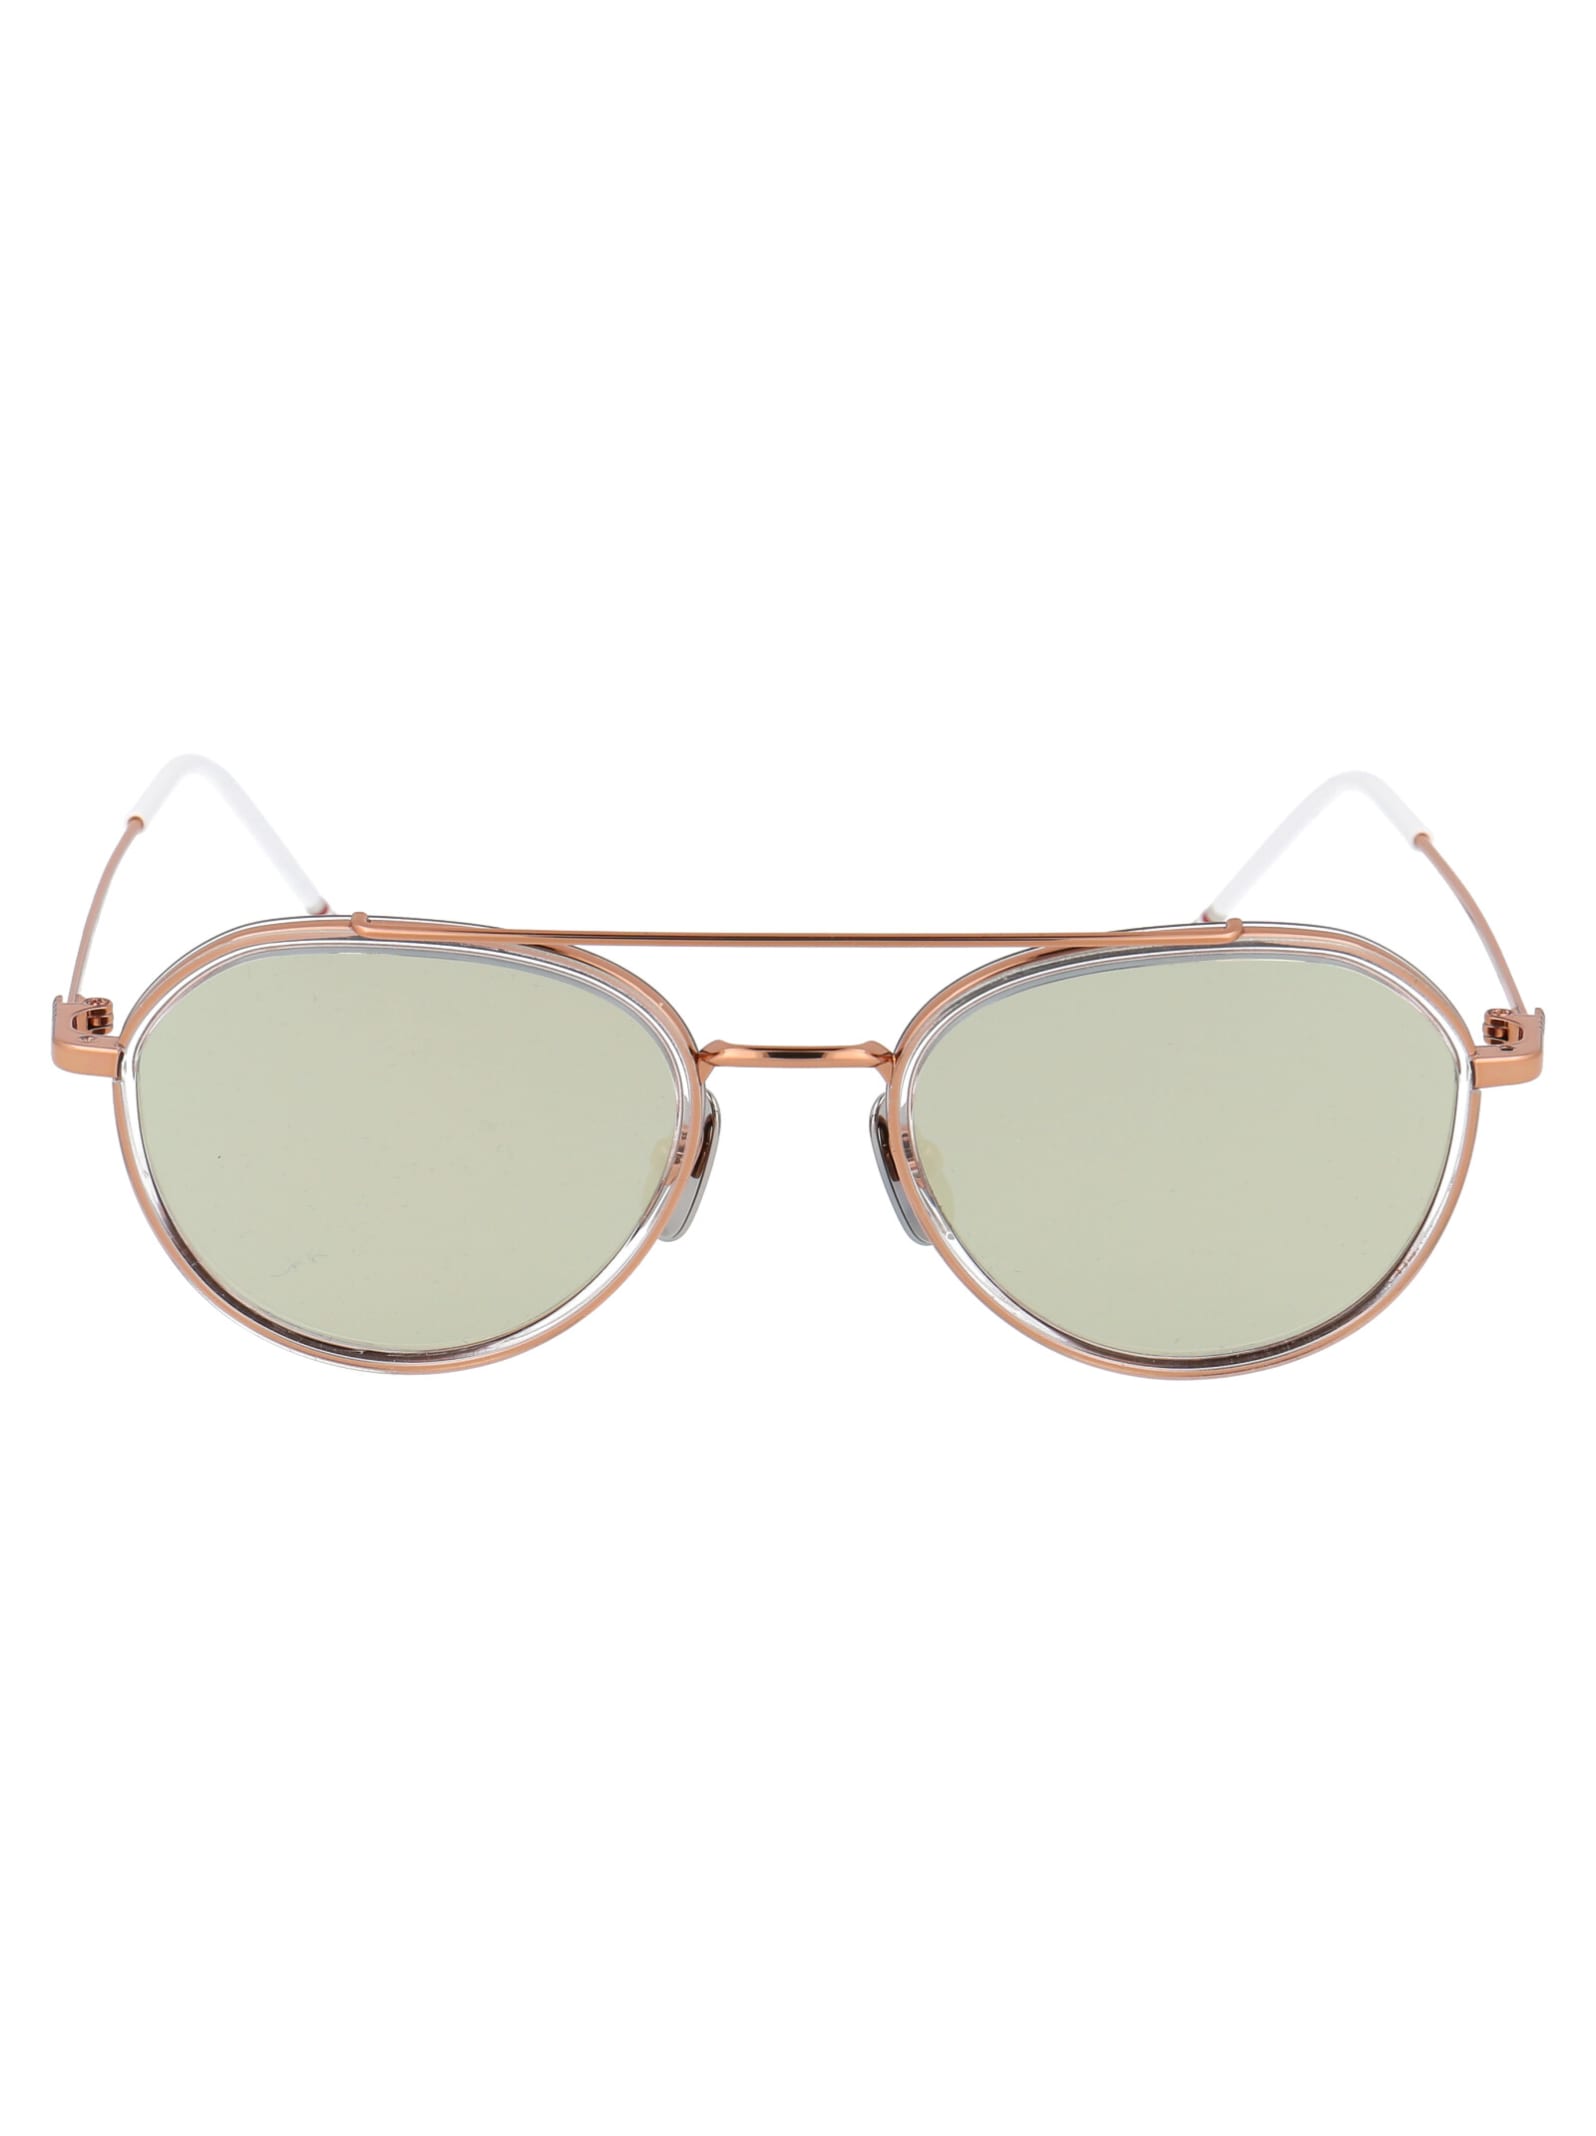 Thom Browne Tb-801 Sunglasses In Rose Gold - Crystal Clear W/ Dark Grey - Milky Gold Flash - Ar